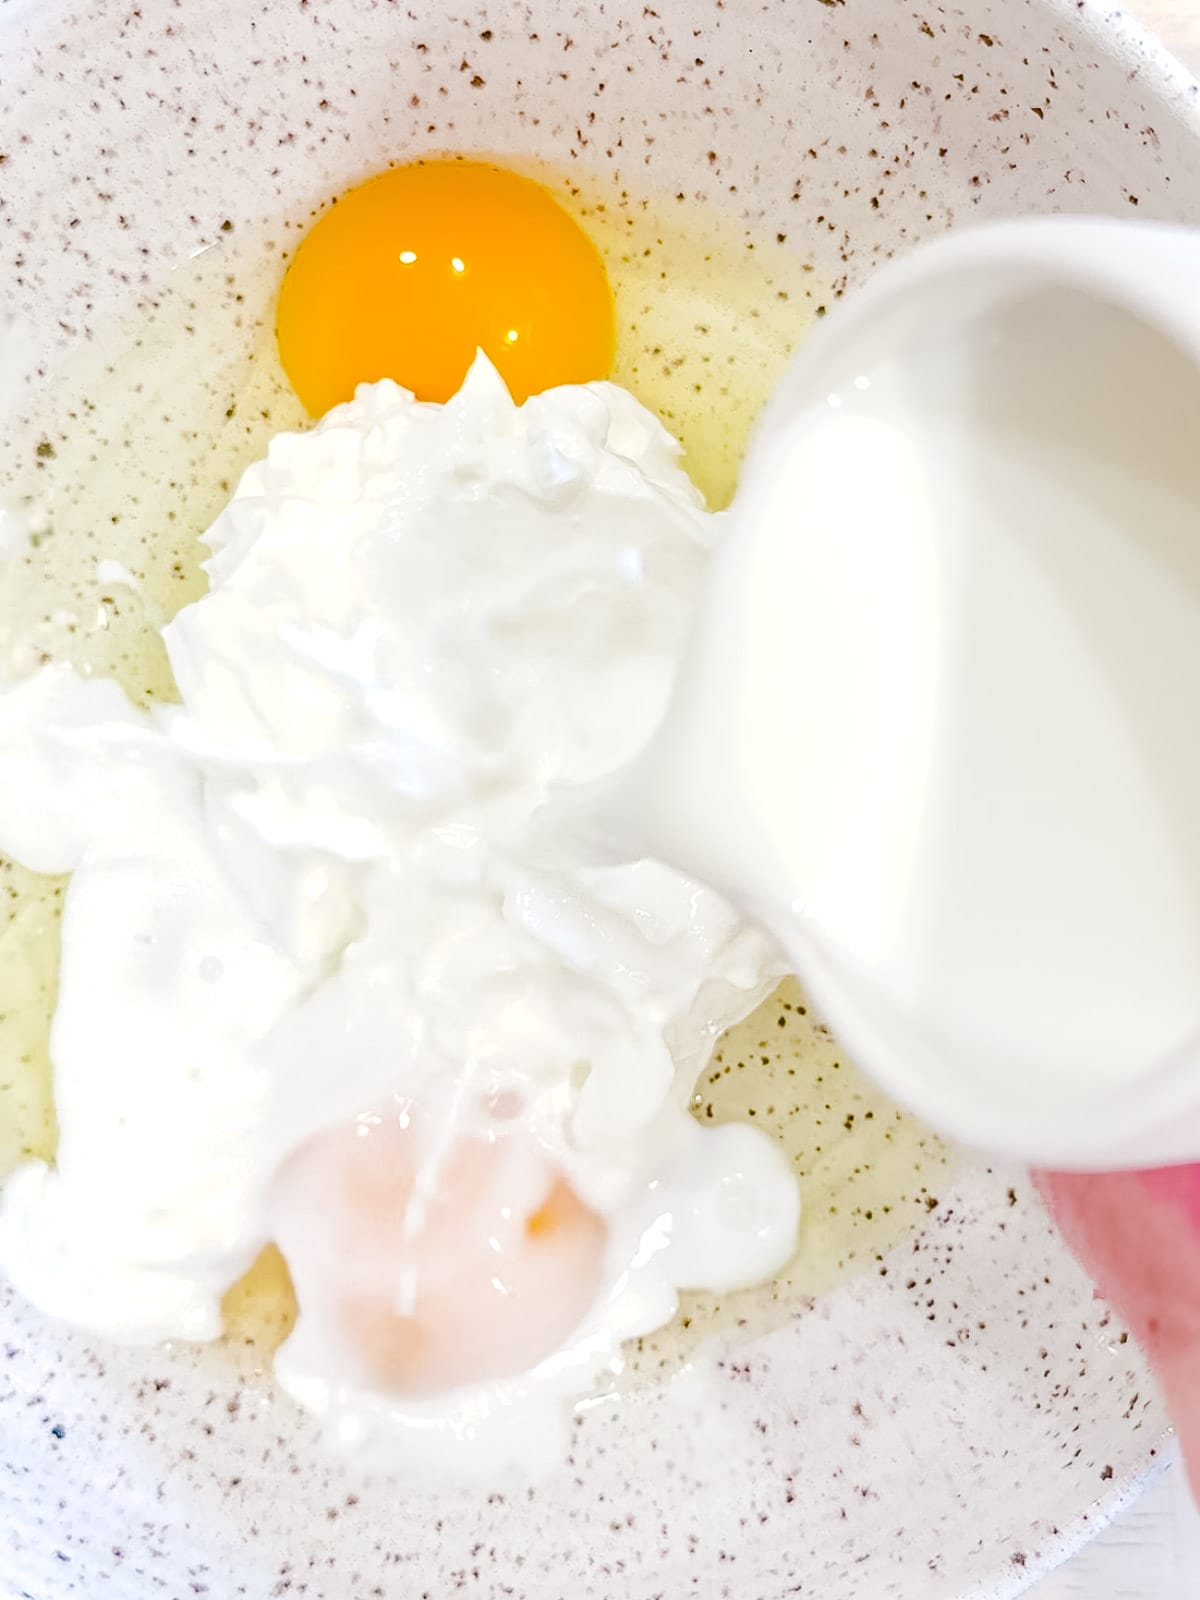 Adding milk to yogurt pancake wet ingredients.